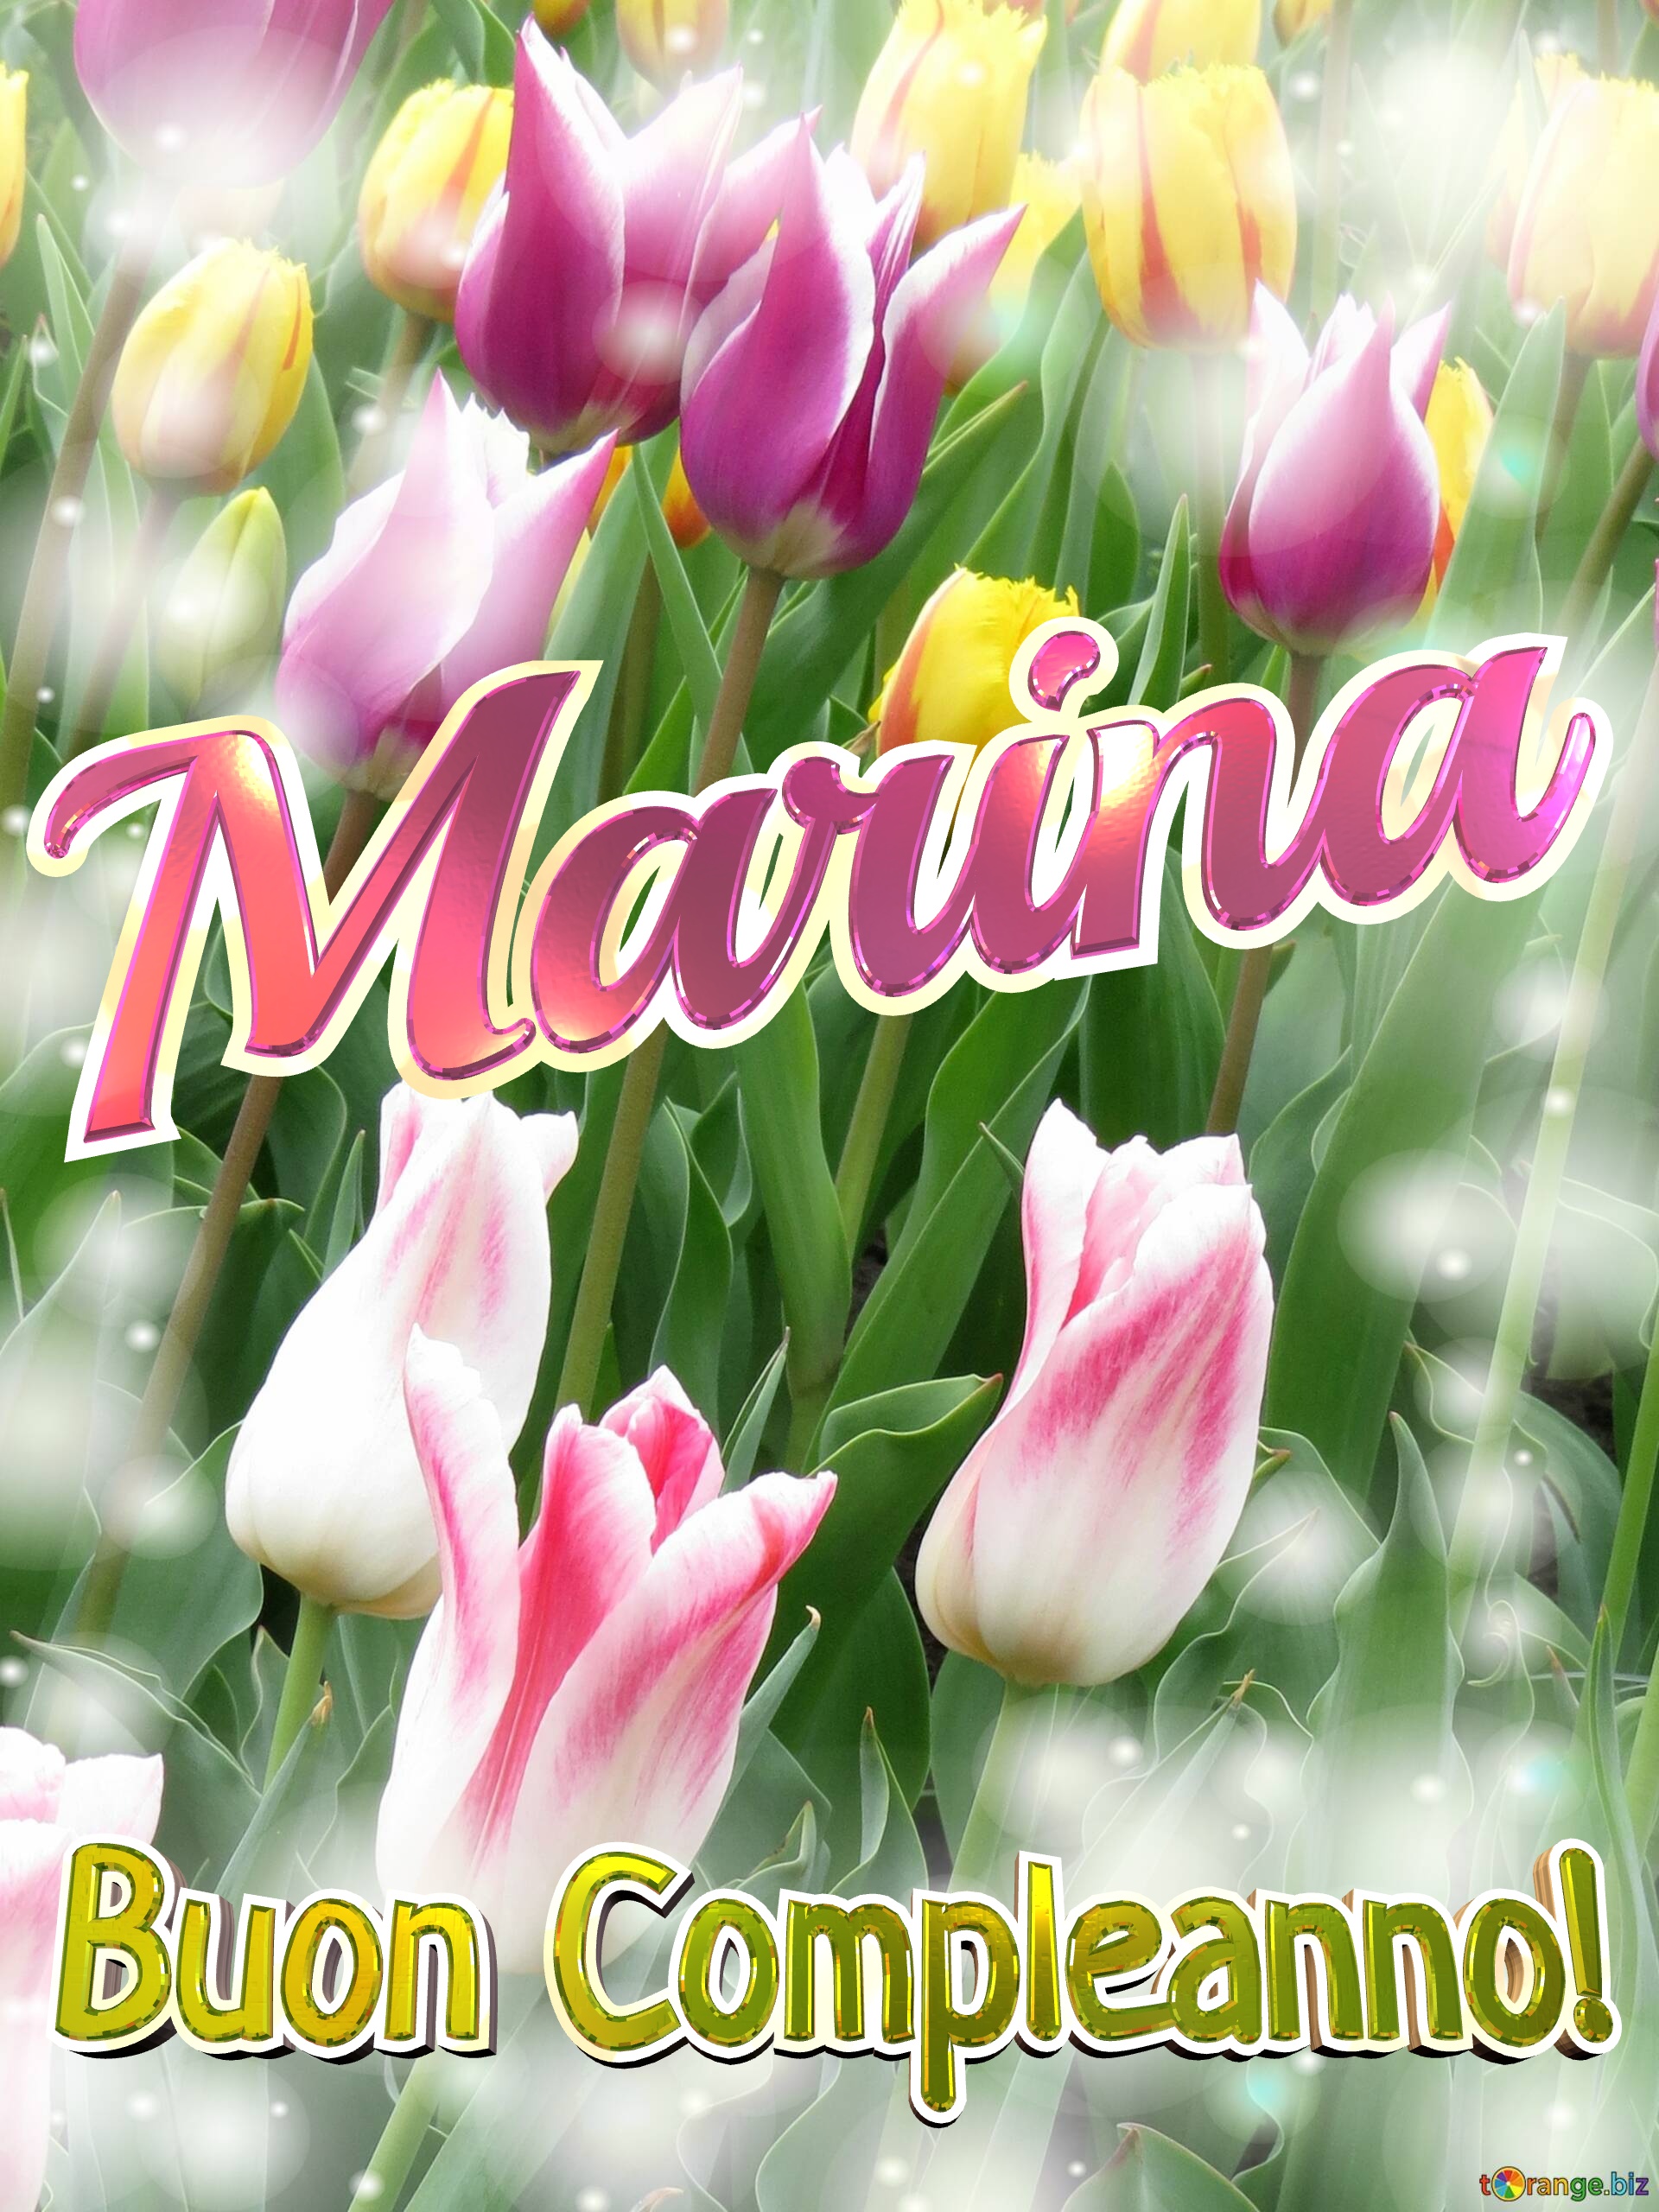 Buon Compleanno! Marina  La bellezza dei tulipani è un richiamo alla bellezza della vita, goditi ogni istante della tua vita. №0